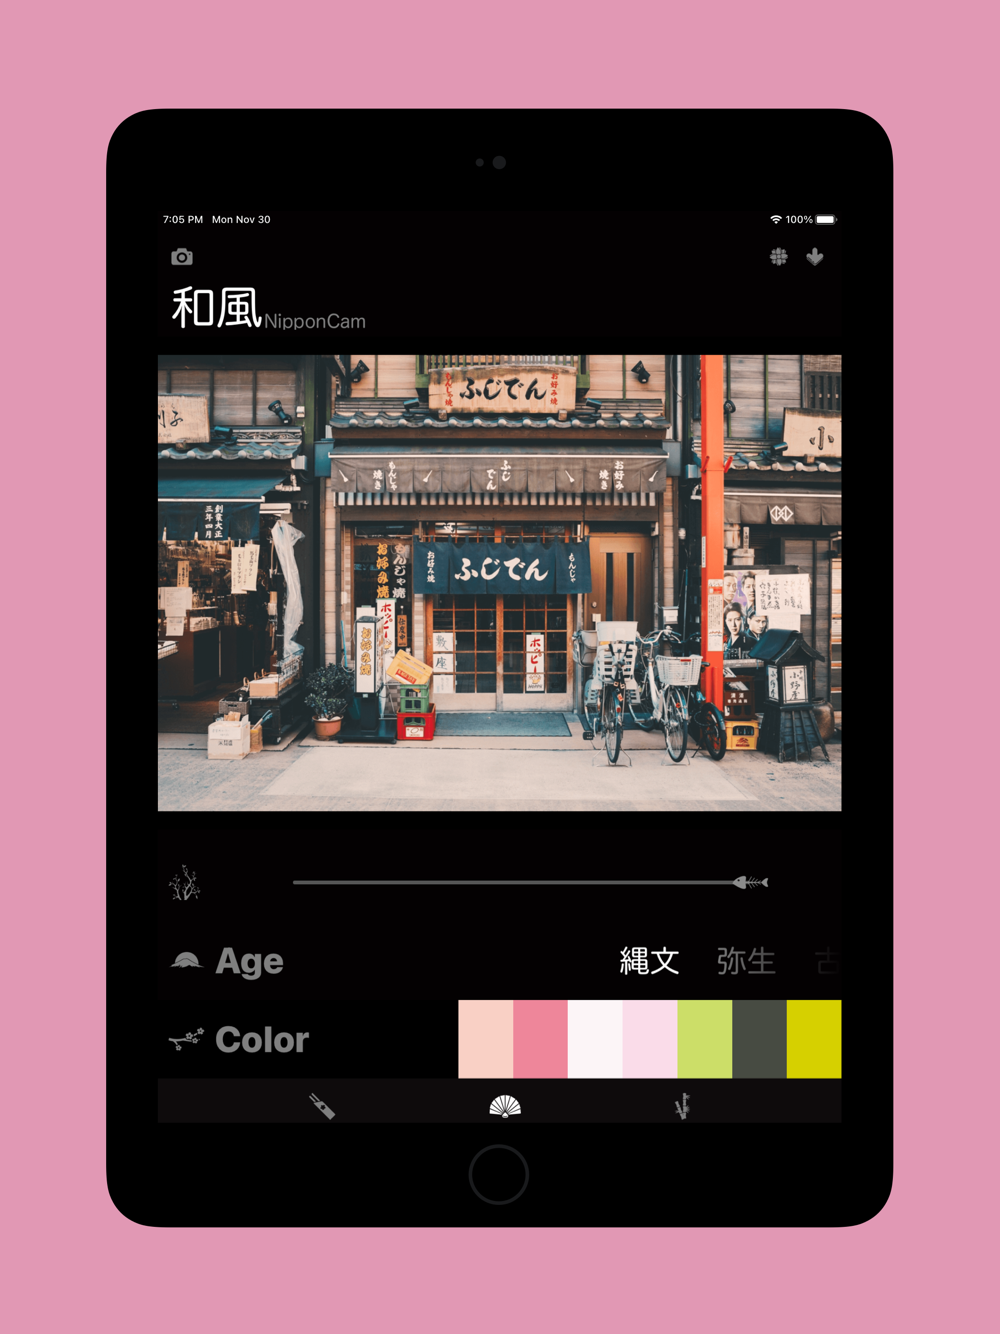 和风滤镜 用色彩点缀世界free Download App For Iphone Steprimo Com